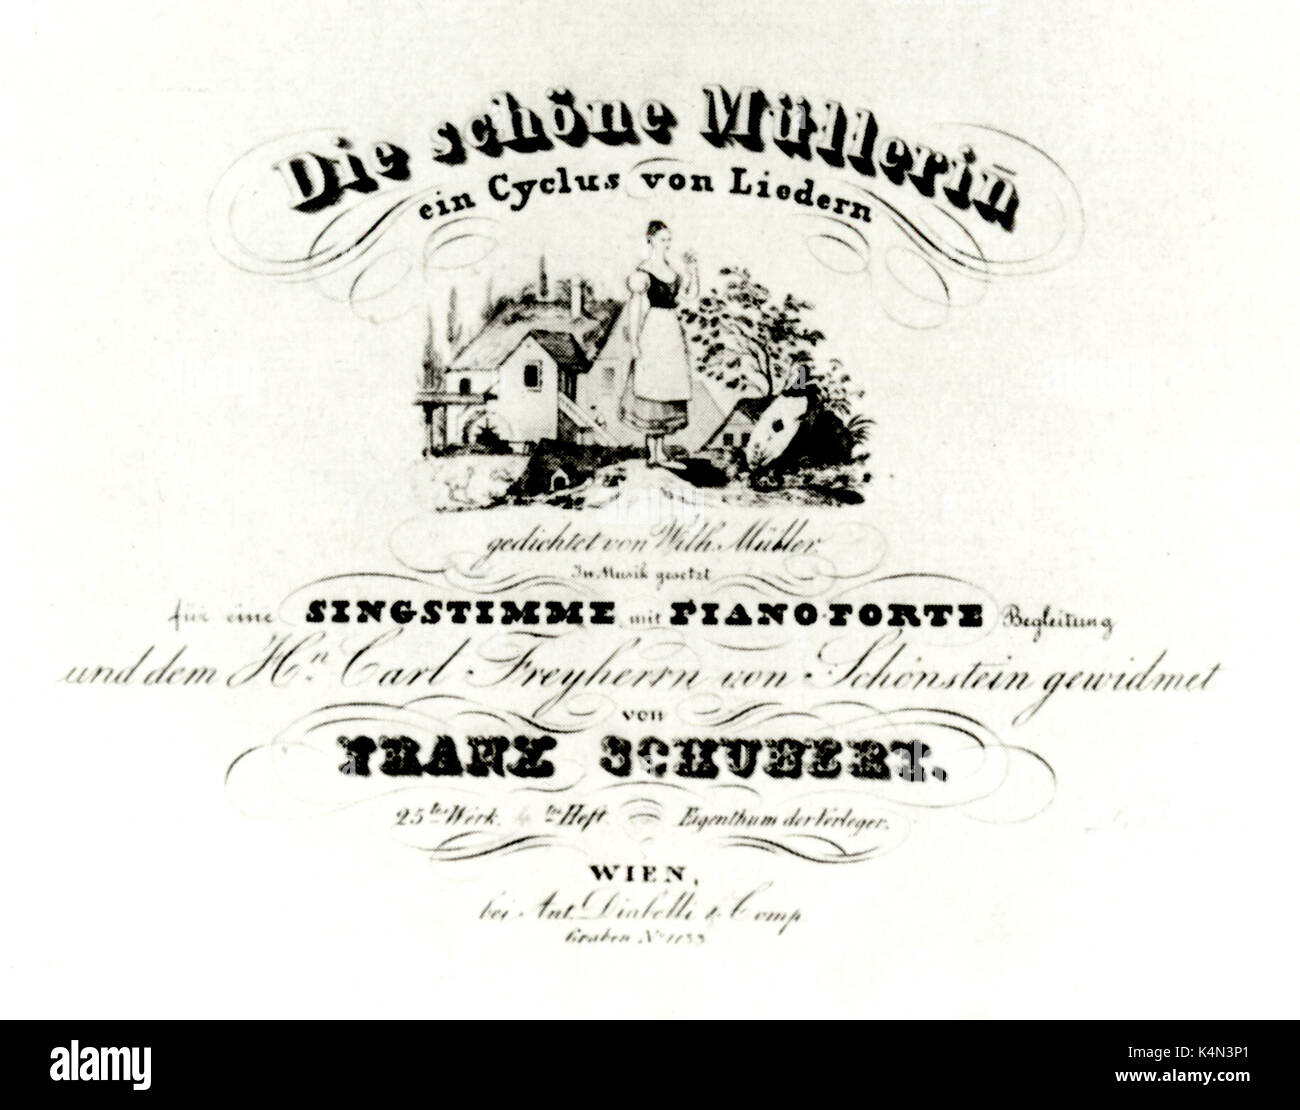 SCHUBERT-DIE SCHÖNE MÜLLERIN Titlepage der Score von seinem Song-Zyklus. Musik von Schubert, Worte von Müller Stockfoto